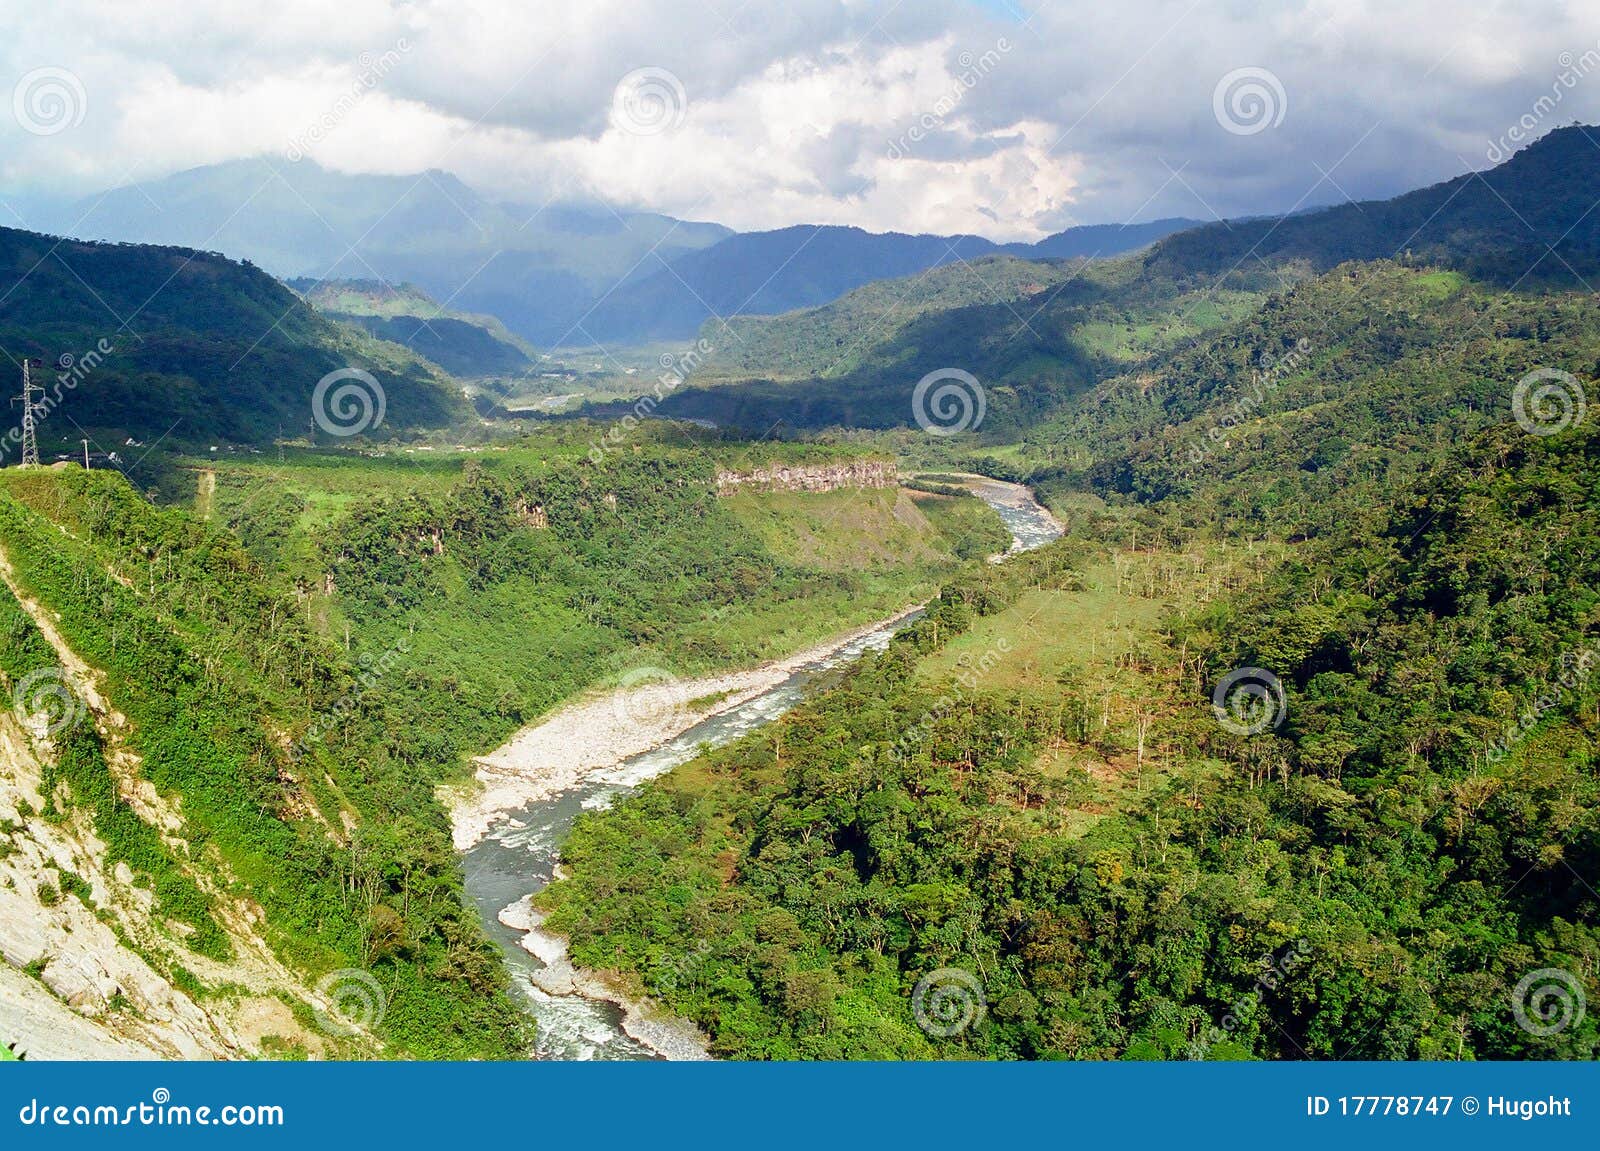 pastaza river in banos, ecuador